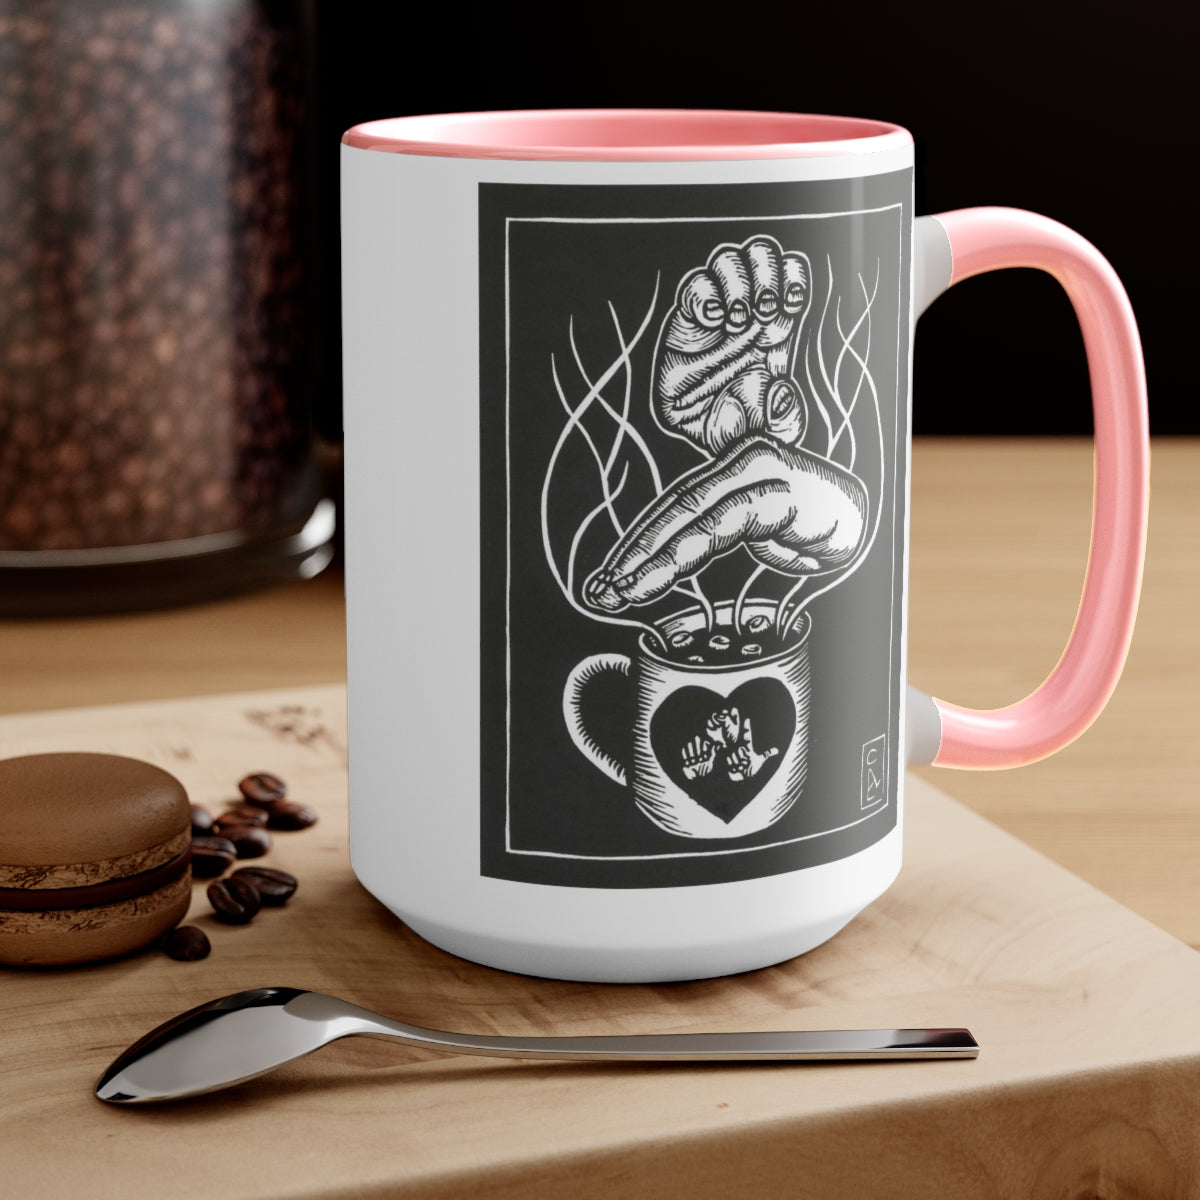 Hot Chocolate mug - 15 oz - ASL - David Call Art